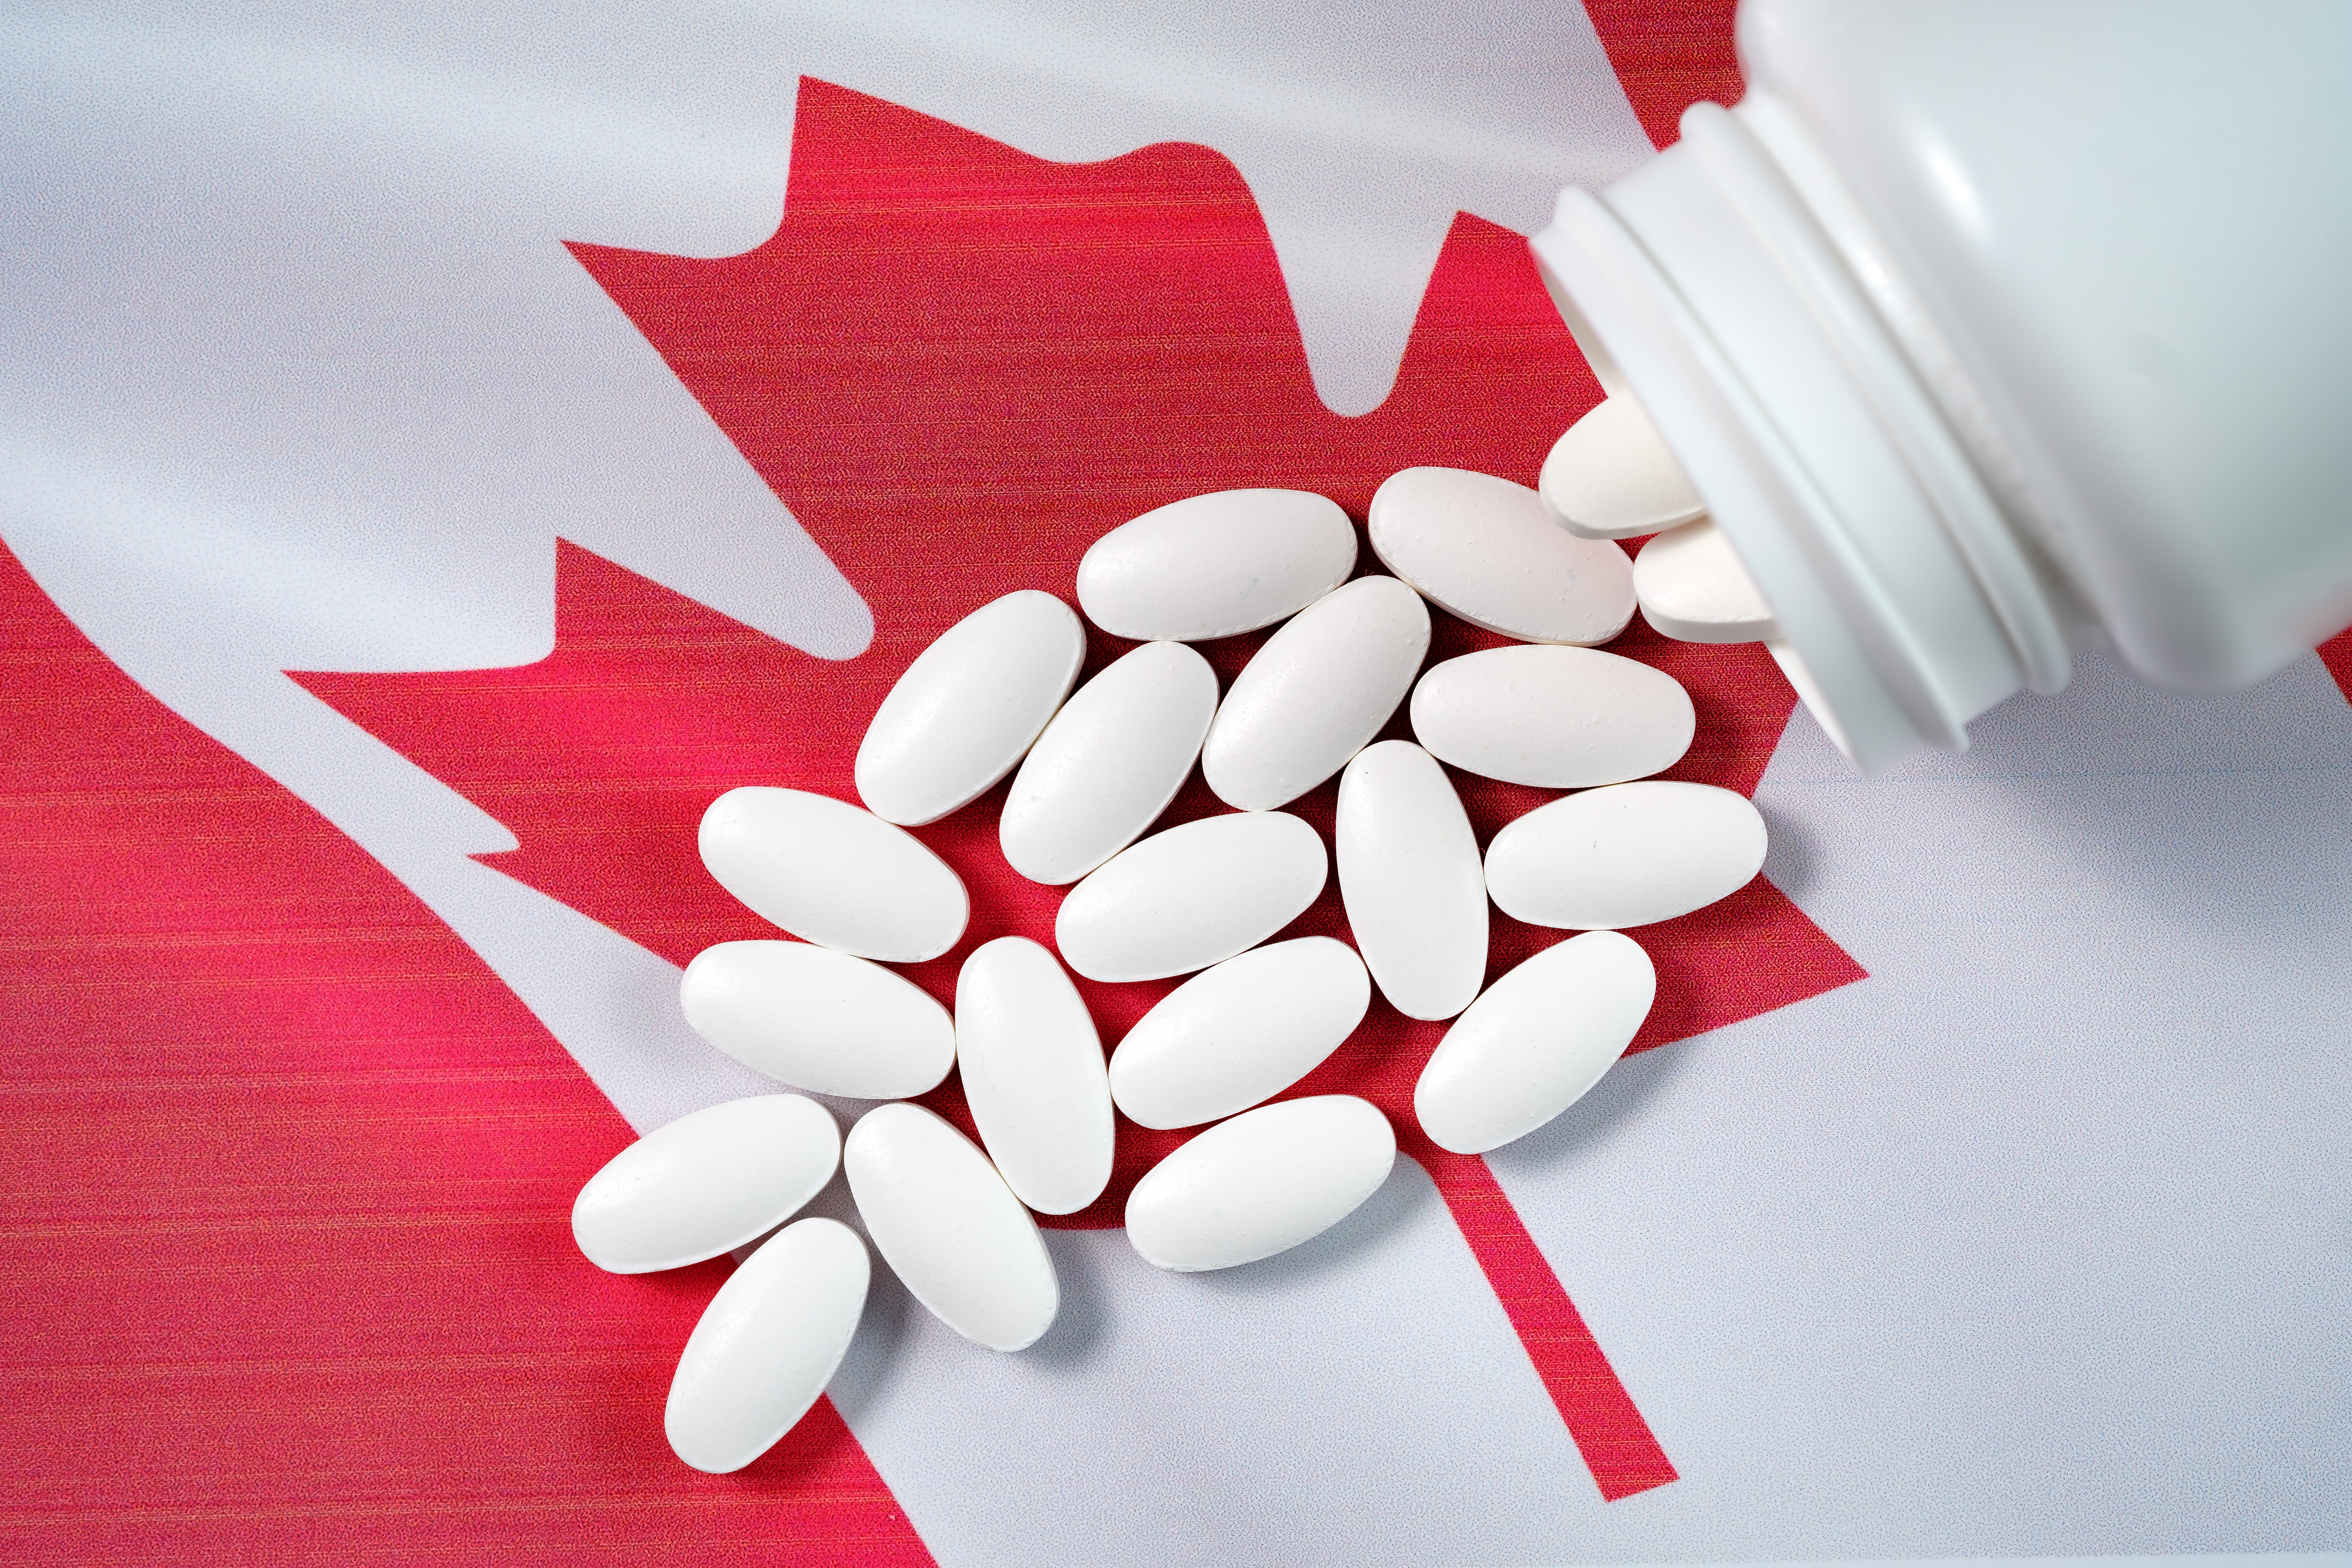 Canadian pharmaceuticals